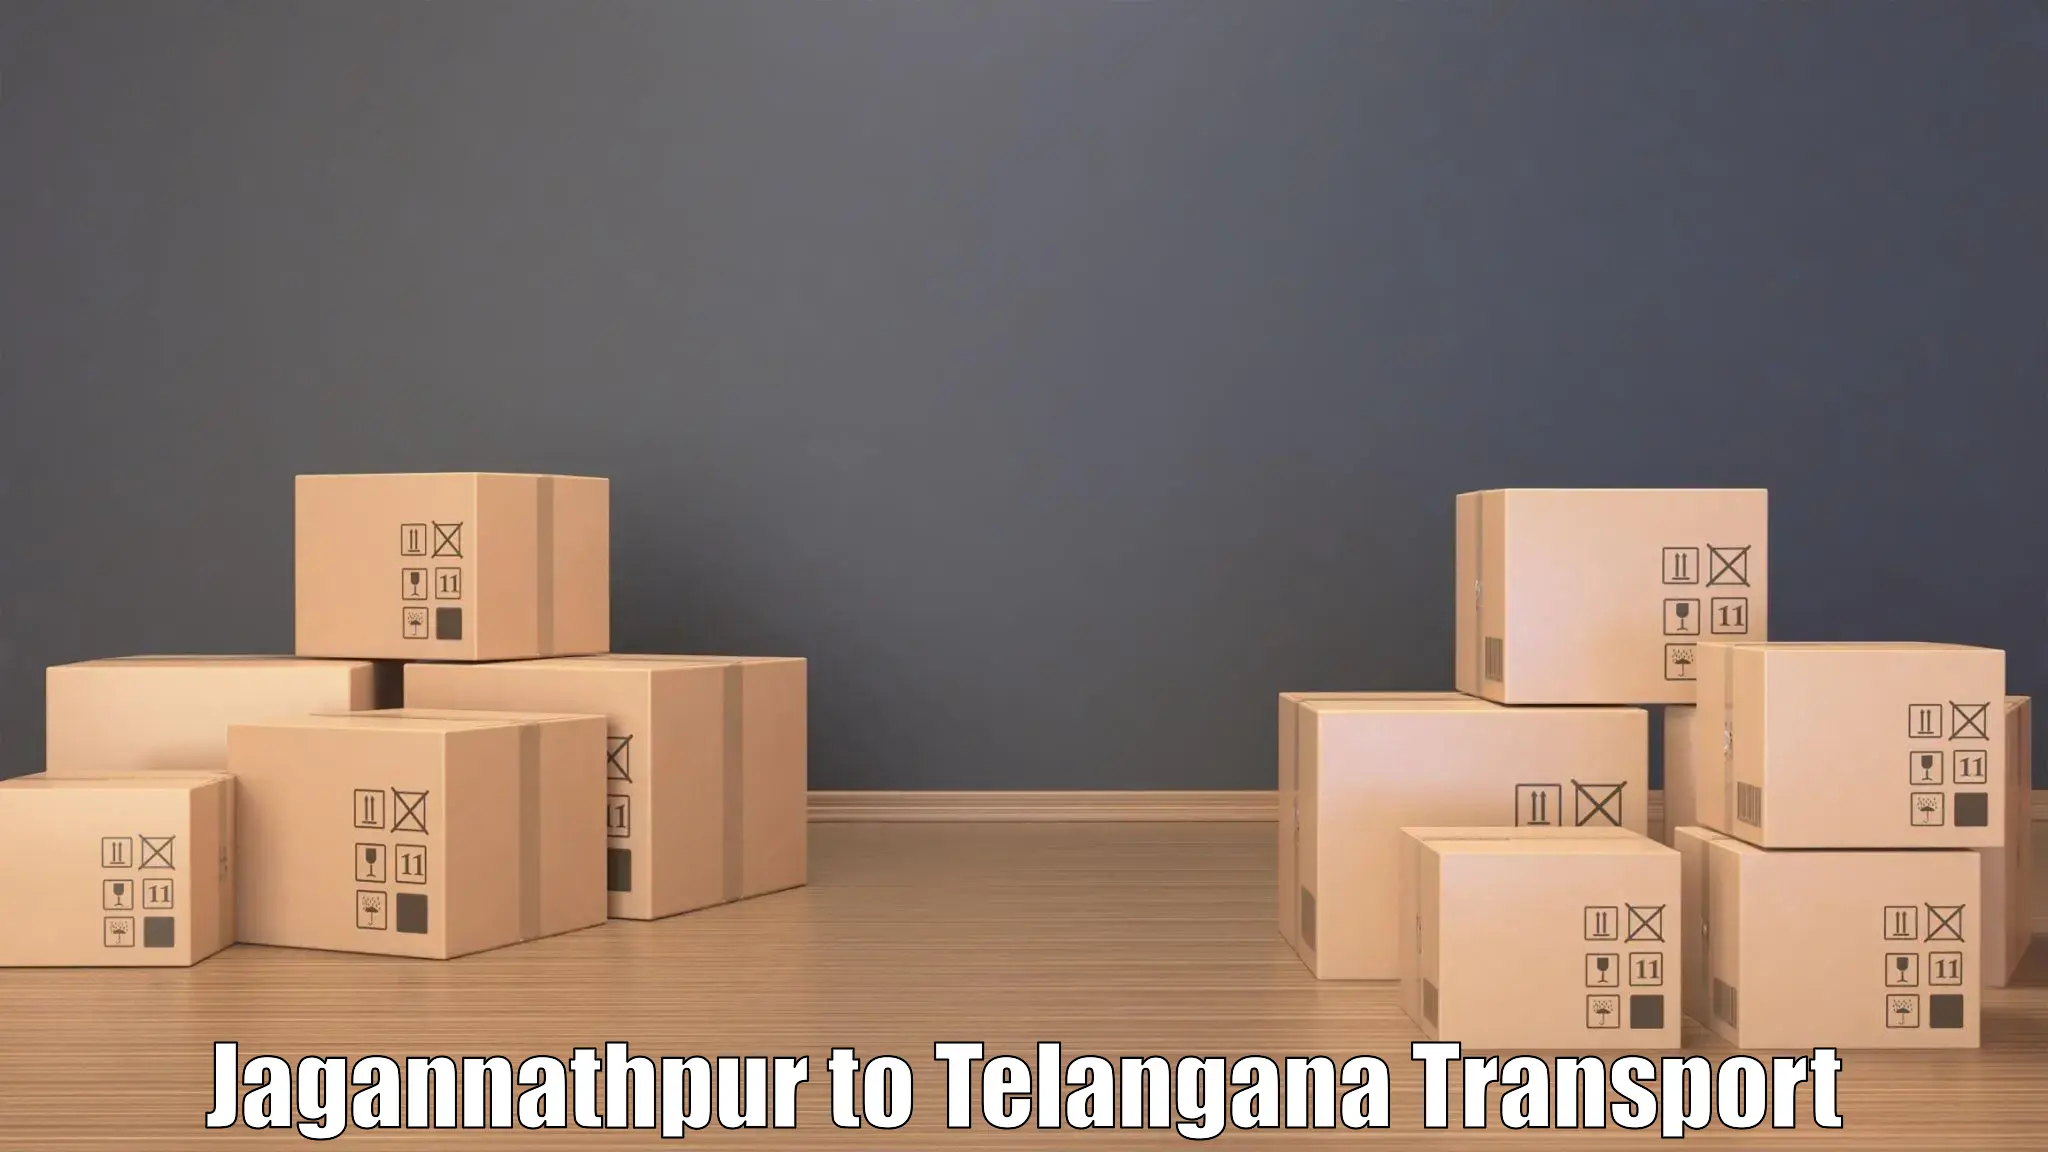 International cargo transportation services Jagannathpur to Husnabad